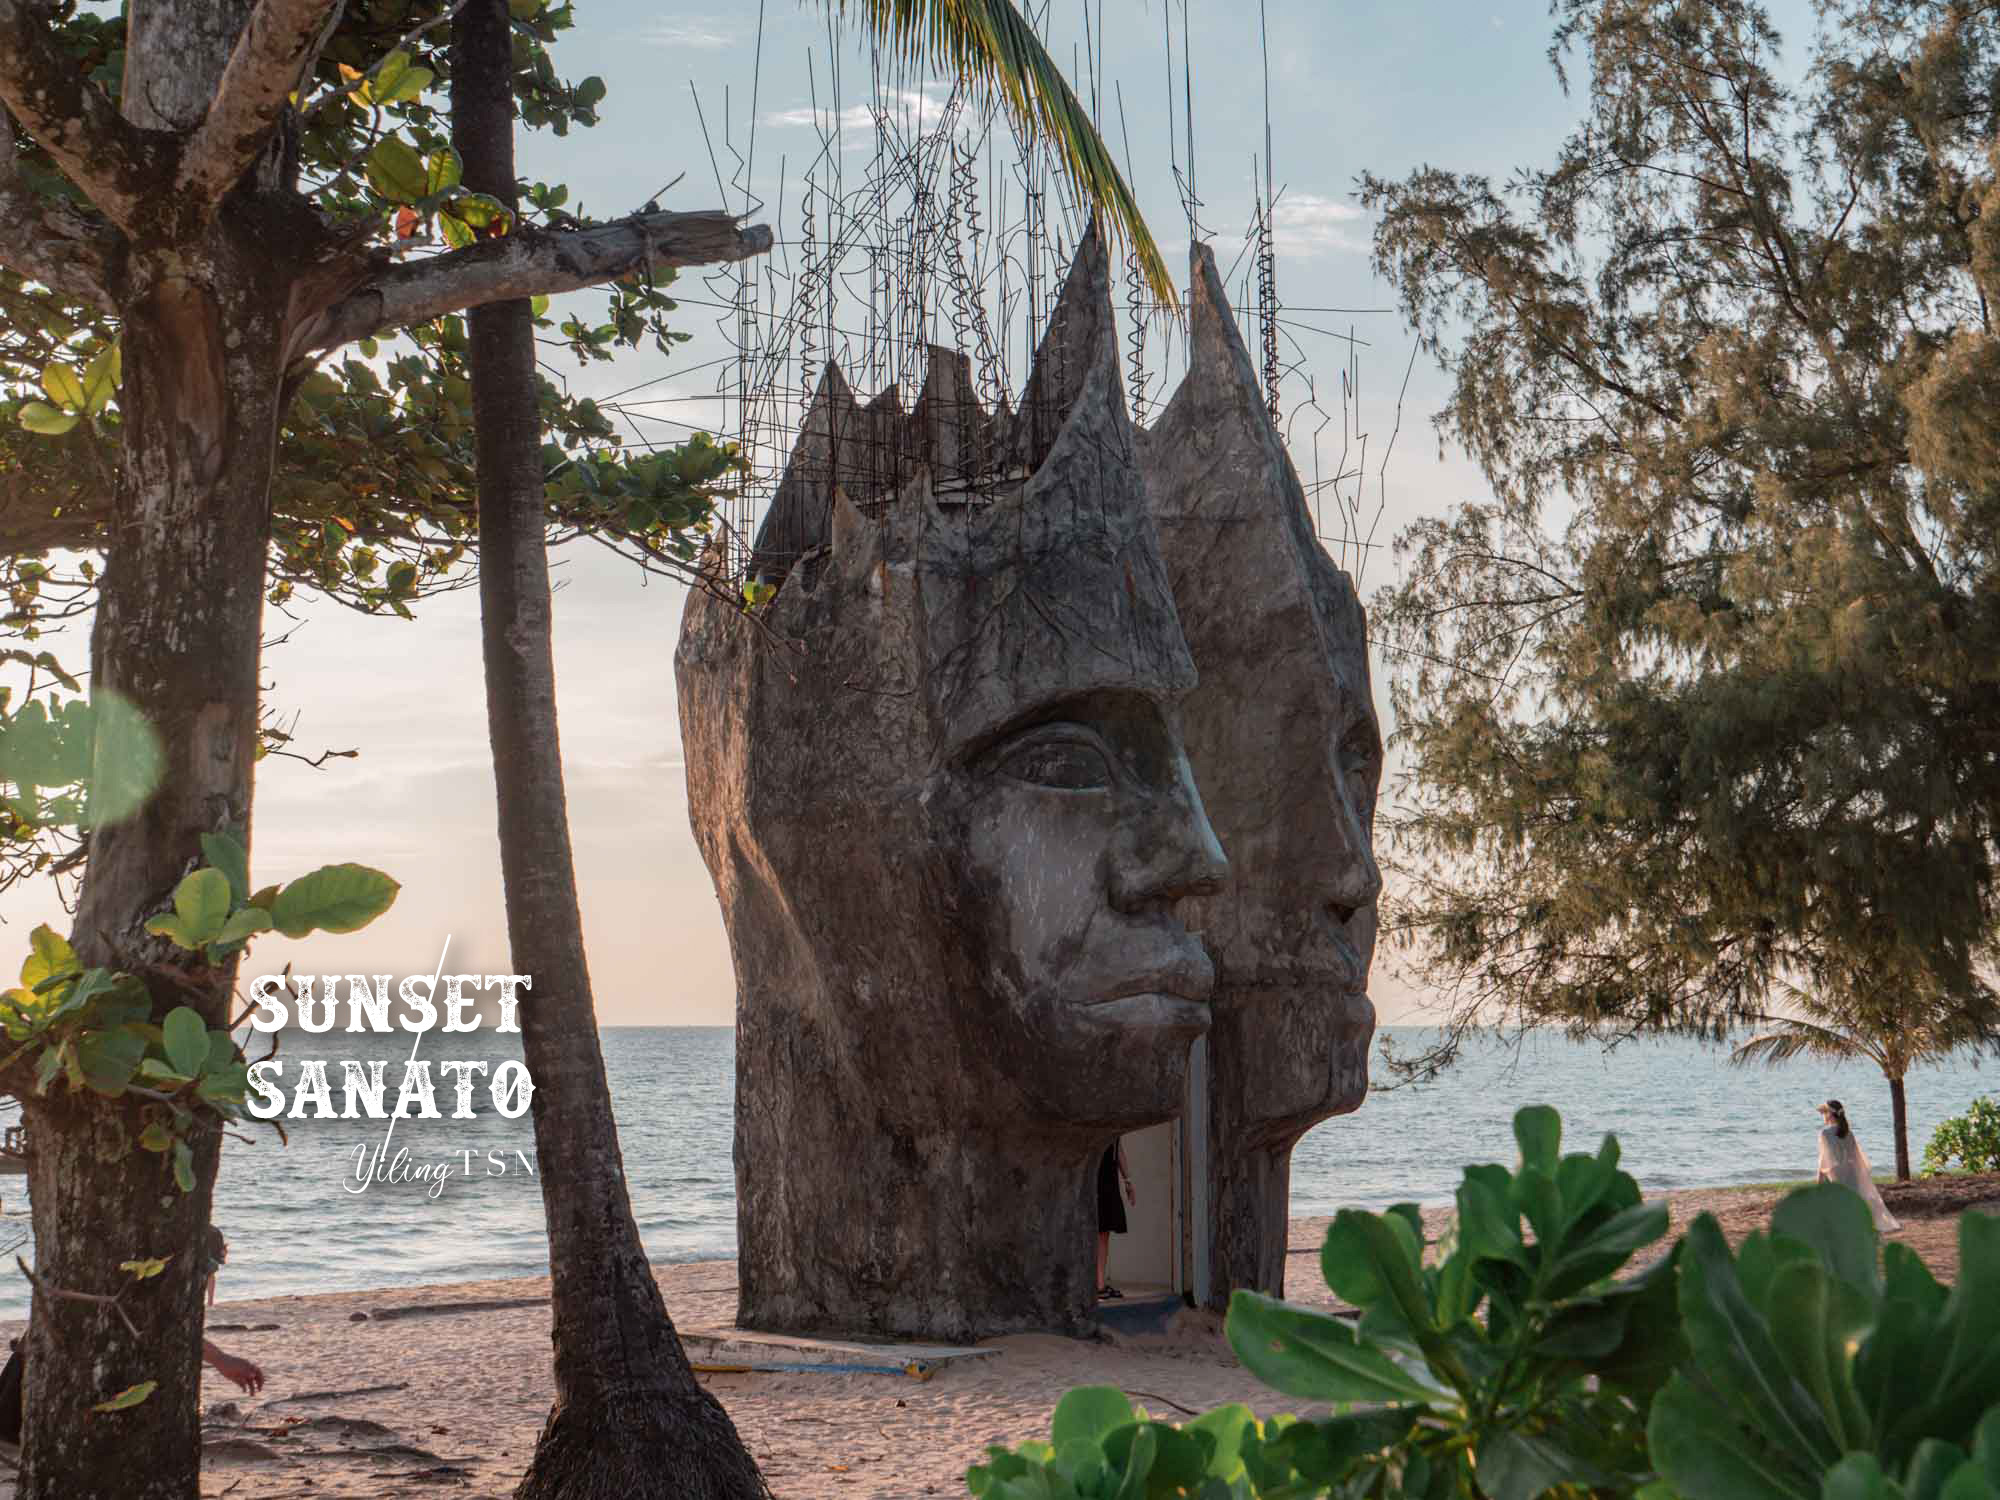 富國島景點｜Sunset Sanato Beach 桑奈托日落海灘：熱門夕陽觀賞點，裝置藝術異形沙灘